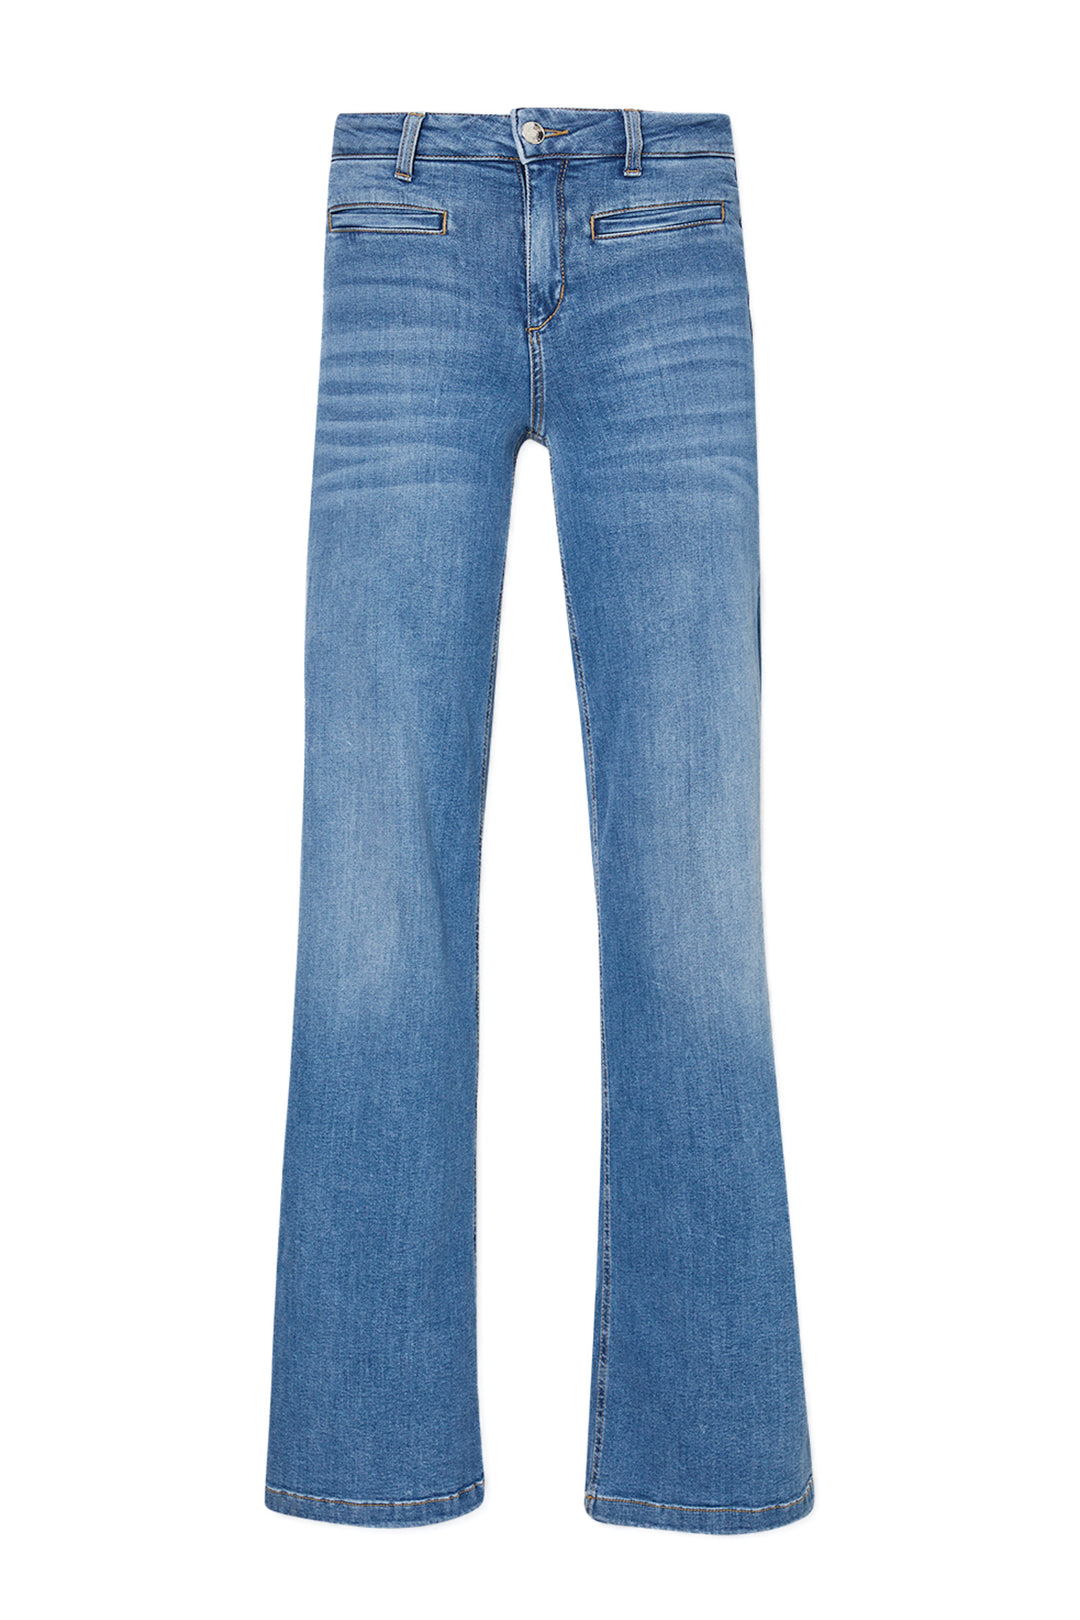 LIU JO Jeans flare bottom up in denim stretch - Mancinelli 1954